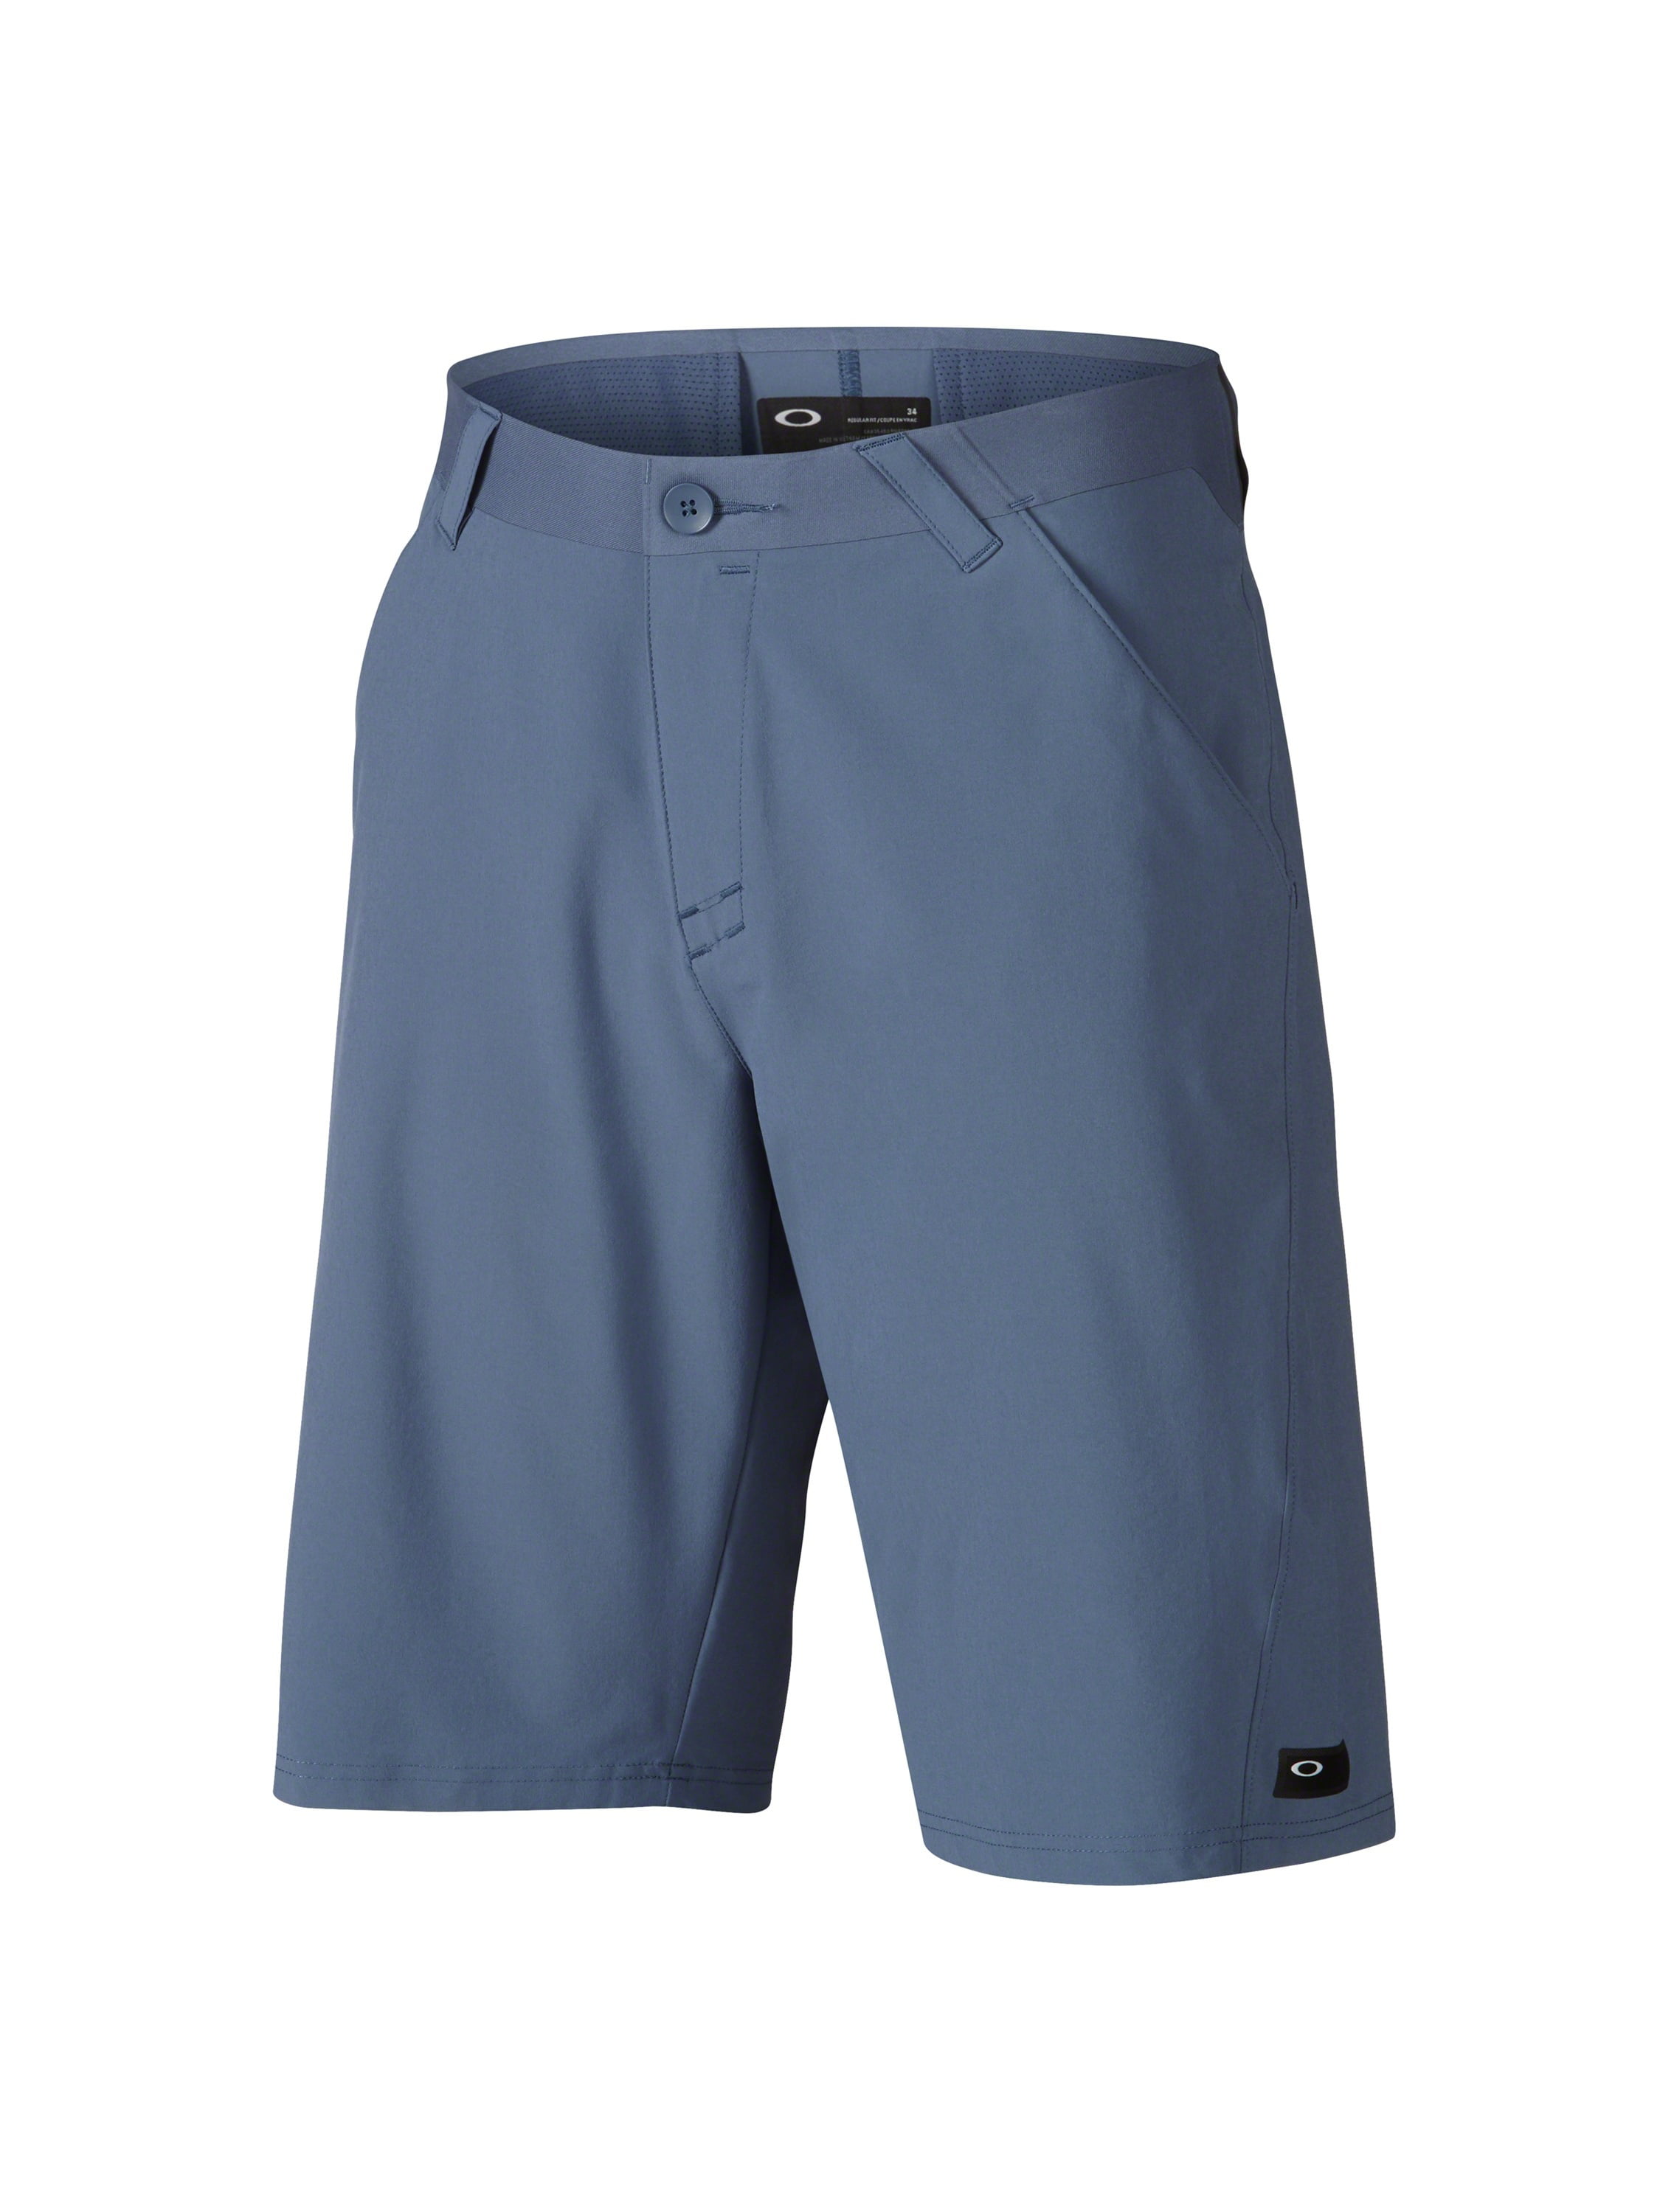 Oakley Velocity Shorts - Walmart.com